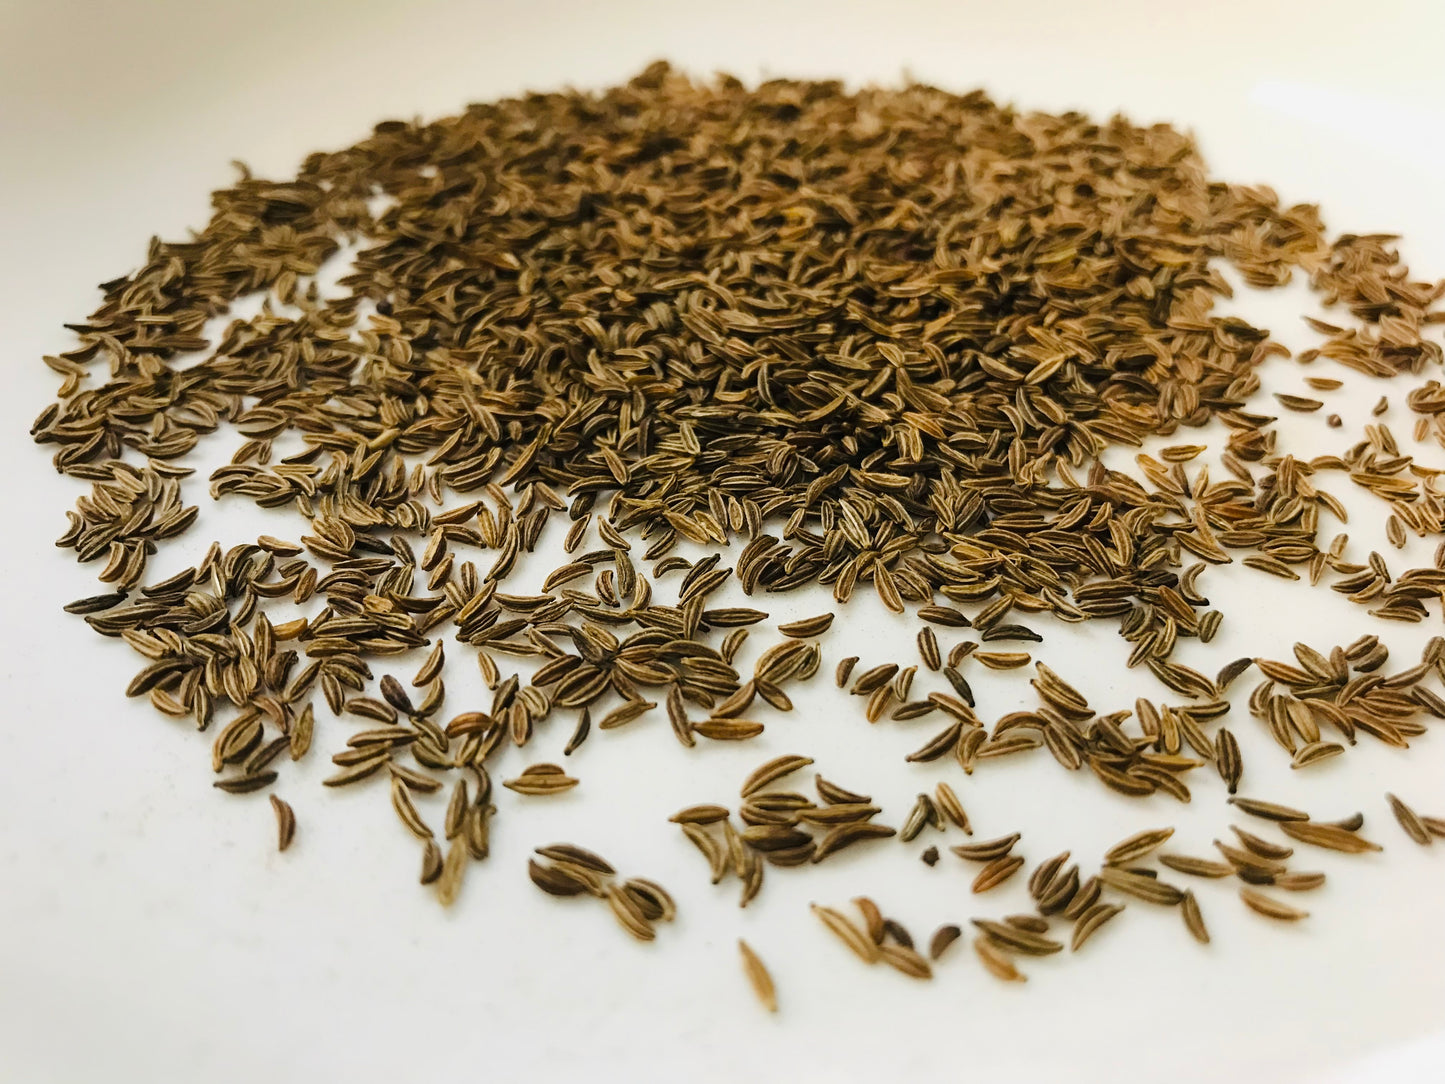 Caraway Seeds